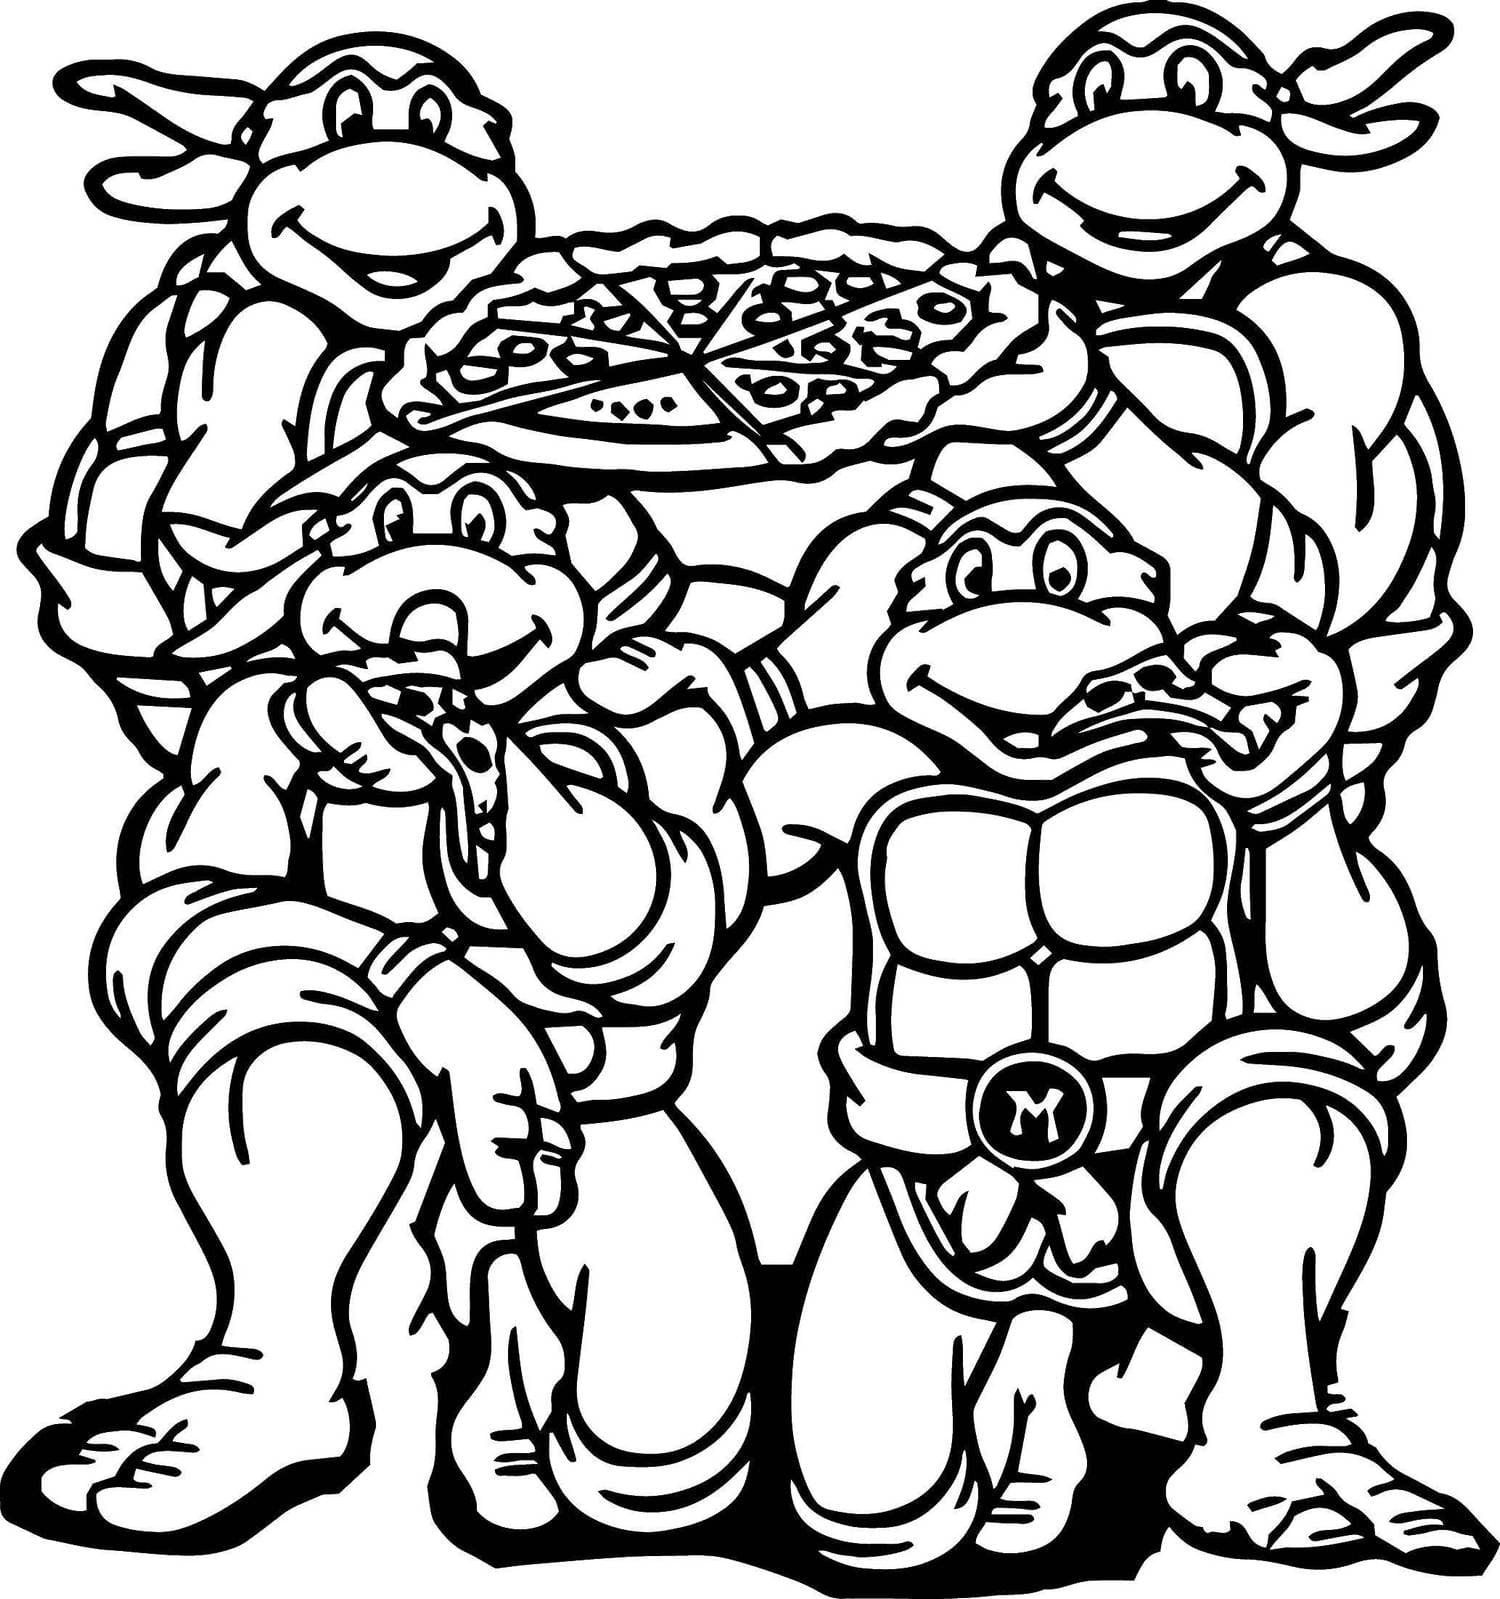 Раскраски Черепашки ниндзя Микеланджело с пиццей